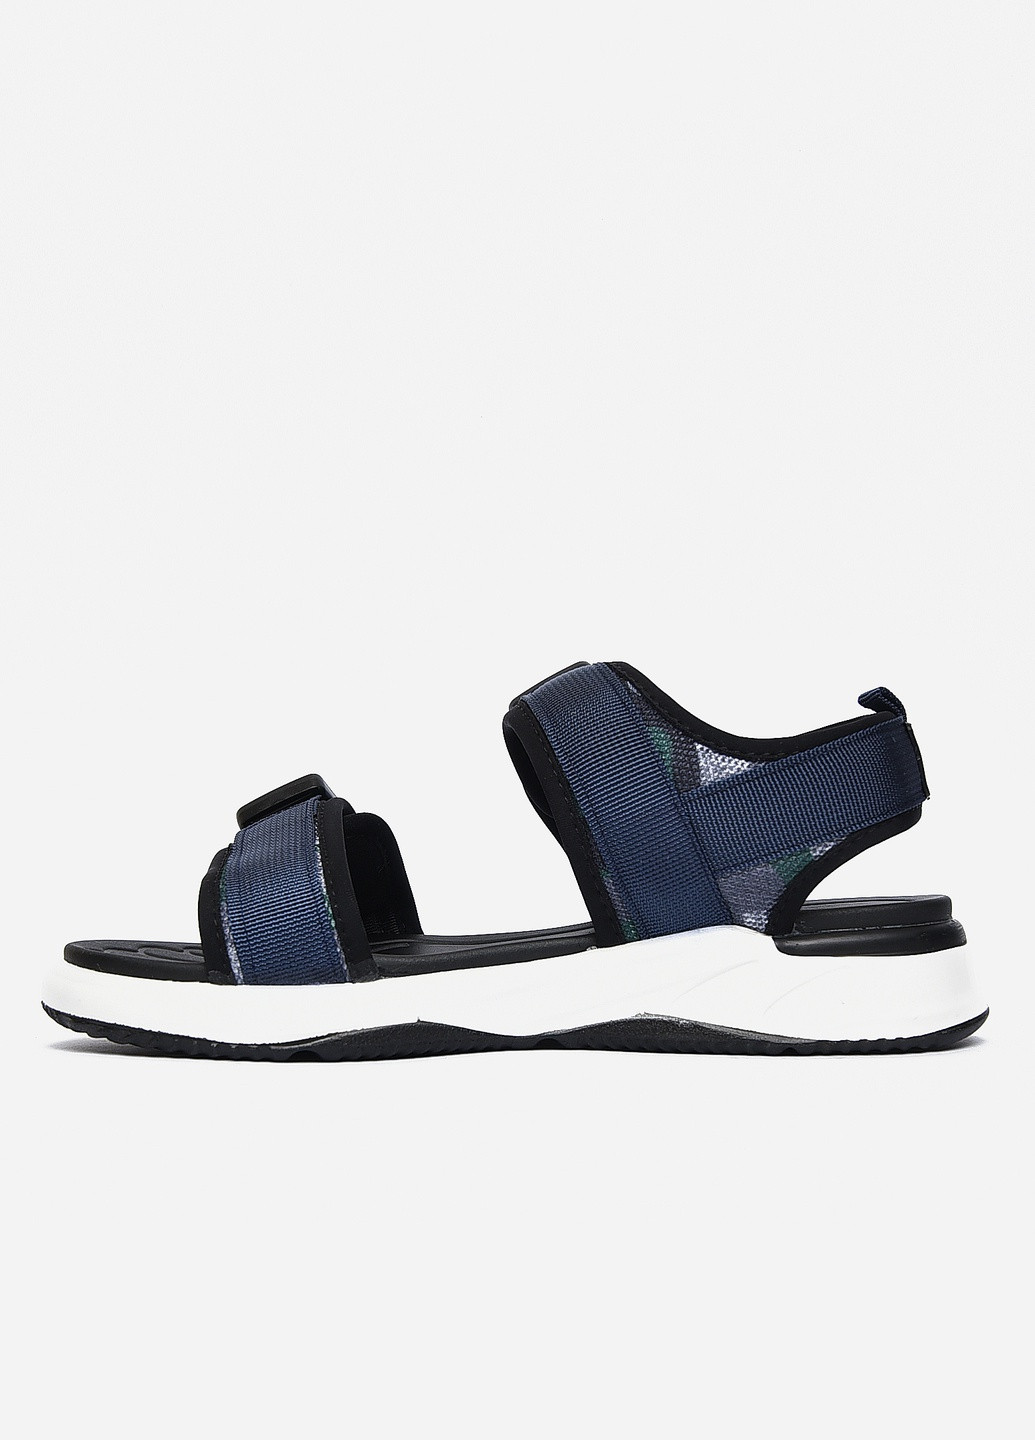 Пляжные сандалии мужские темно-синего цвета текстиль Let's Shop